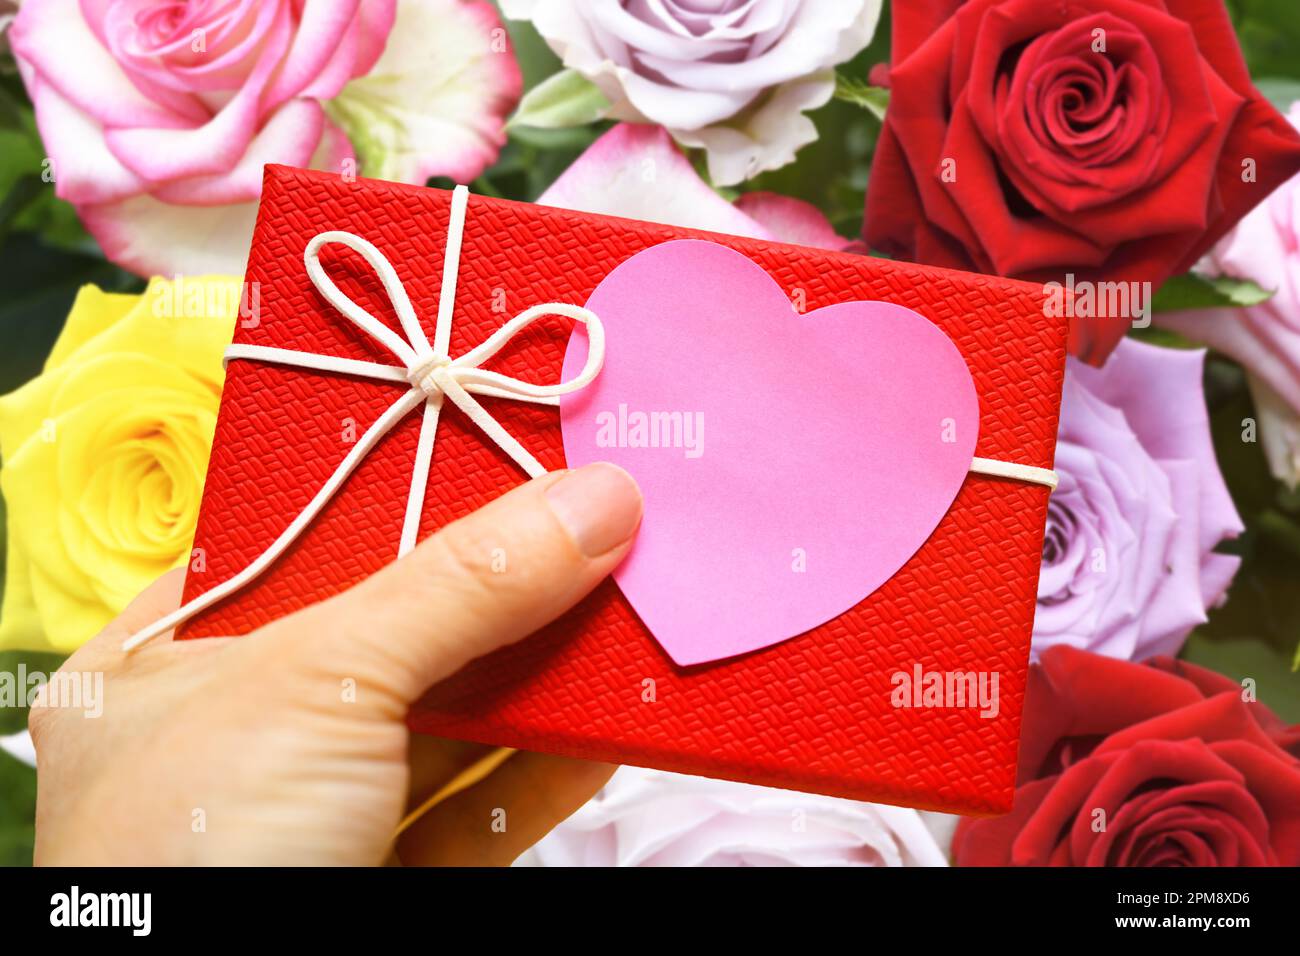 FOTOMONTAGE, hand hält Geschenk mit einem herzförmigen Zettel vor einem Blumenstrauß, Symbolfoto Valentinstag Foto de stock